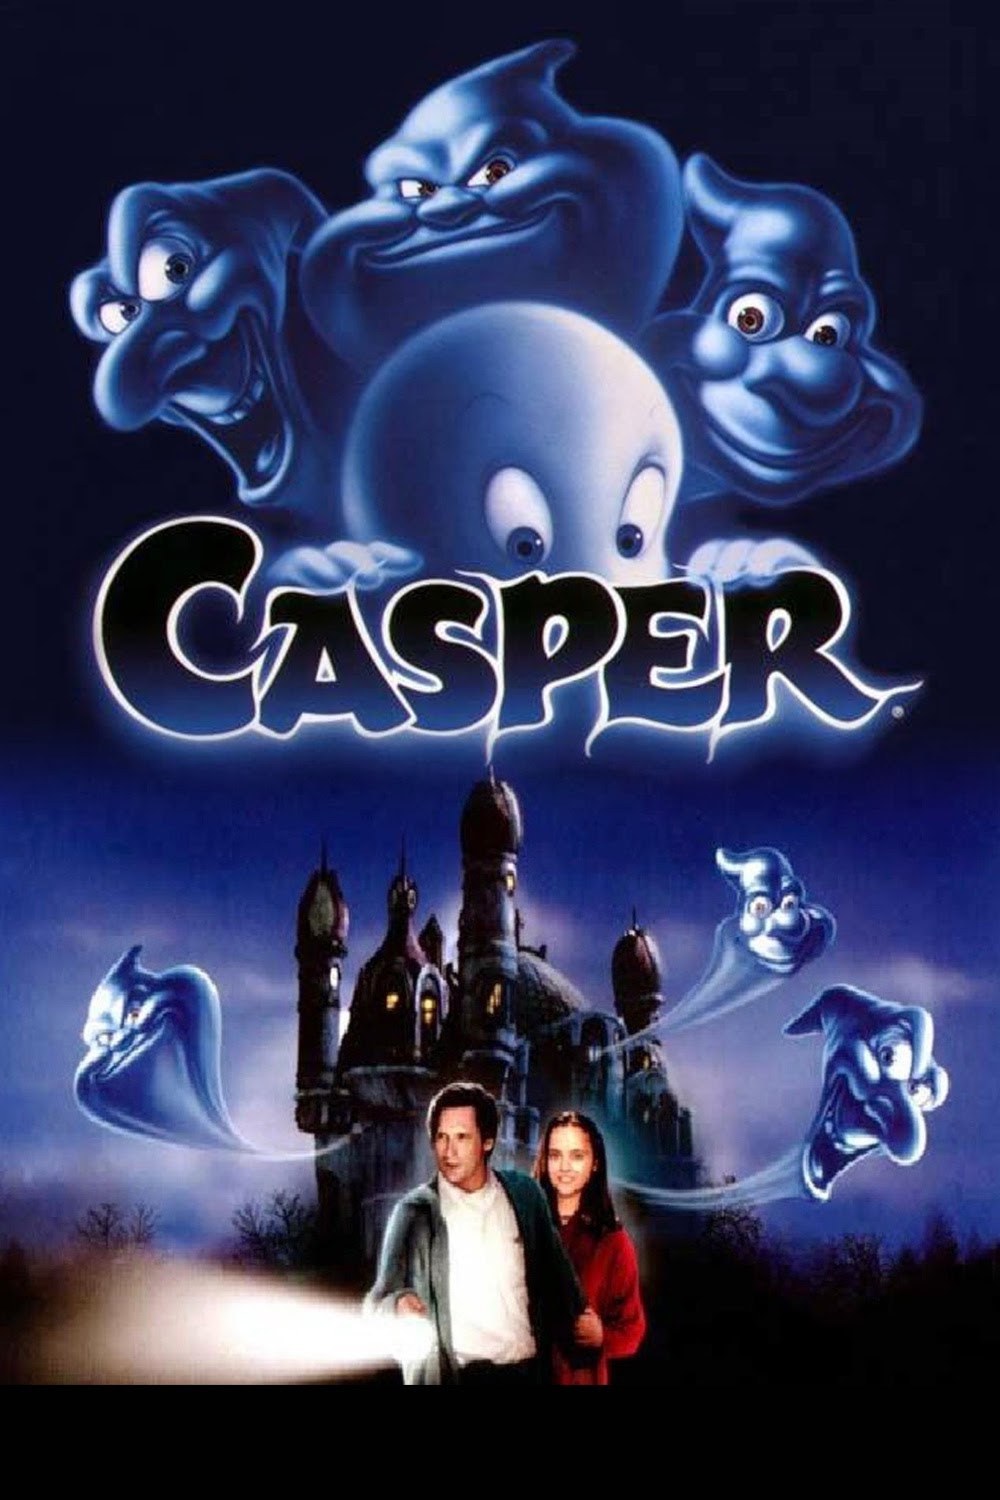 Casper (1995) BluRay 720p Full Movie + Subtitle Indonesia